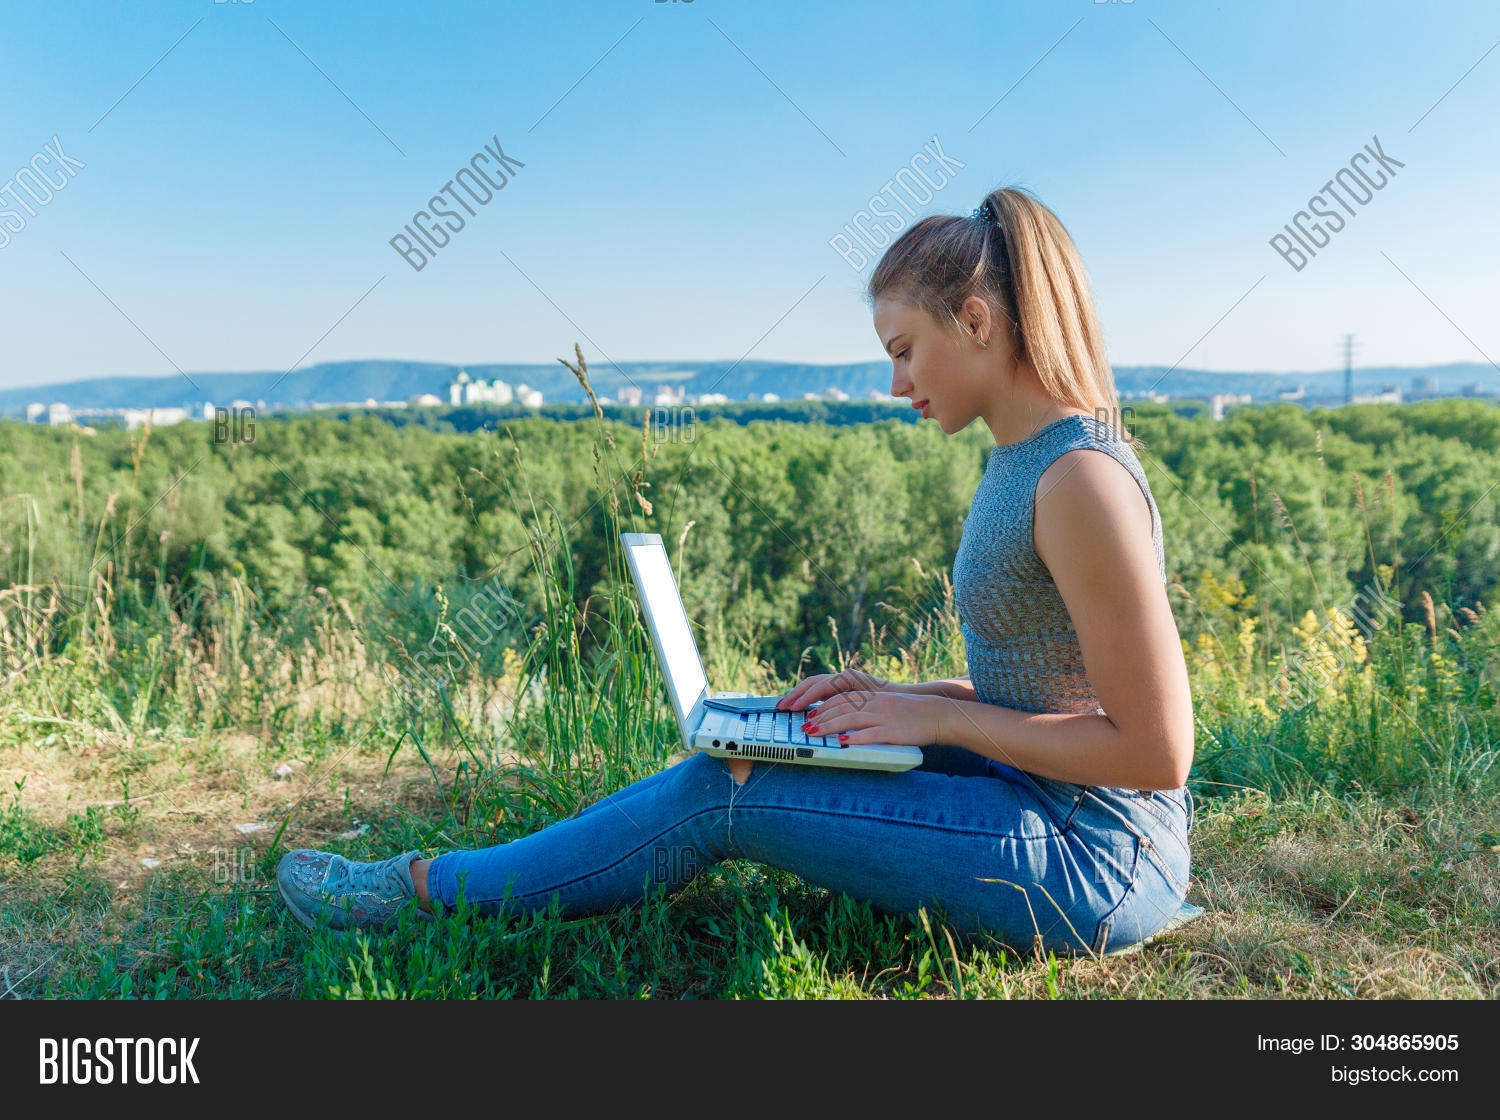 100 000 изображений по запросу Девушка ноутбук море доступны в рамках роялти-фри лицензии